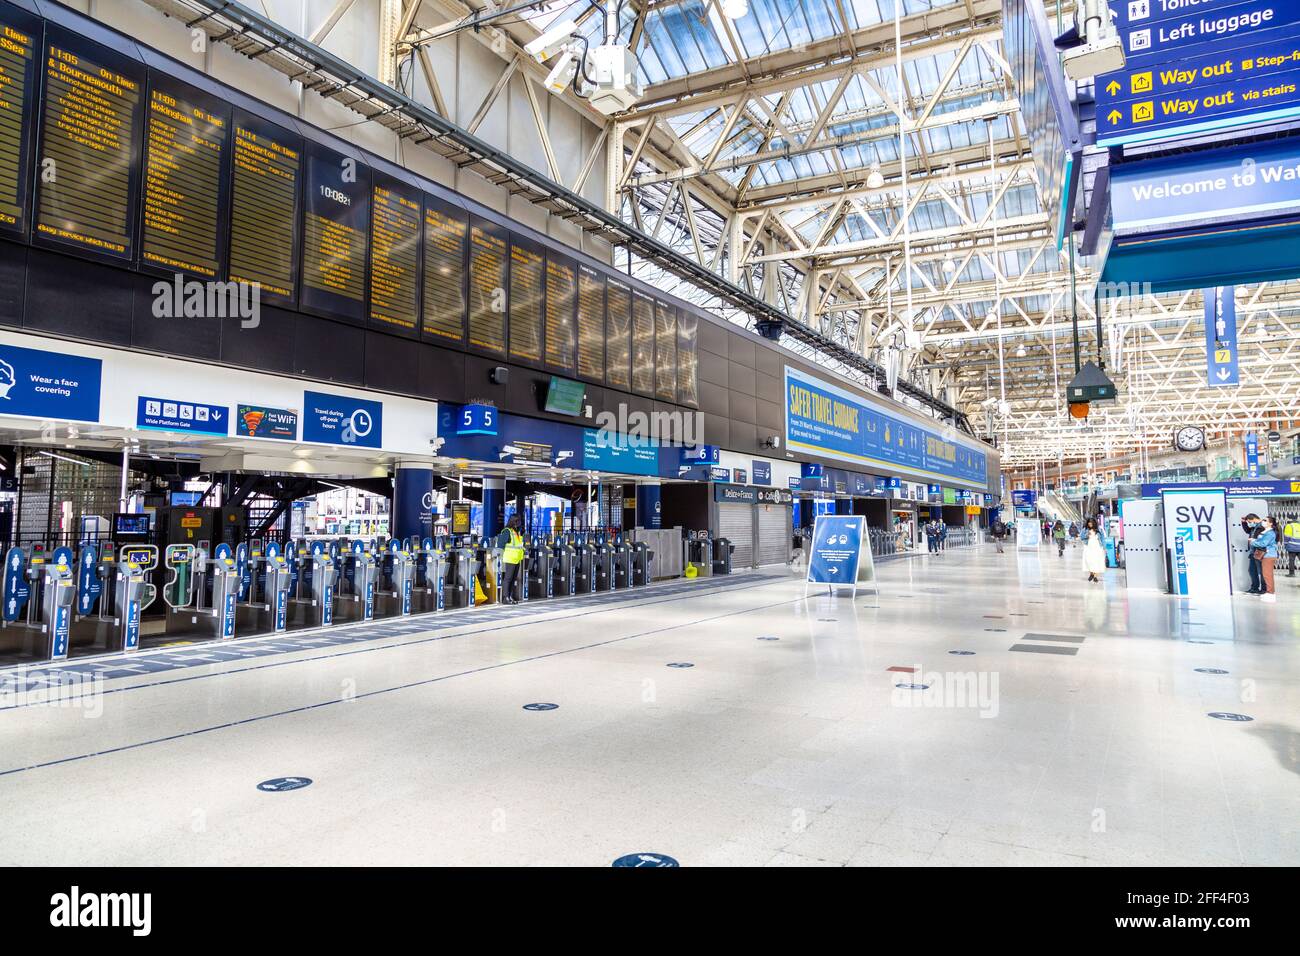 18 avril 2021 - Londres, Royaume-Uni, vide Waterloo Station concourse pendant les premières étapes de l'assouplissement du confinement en cas de pandémie du coronavirus Banque D'Images